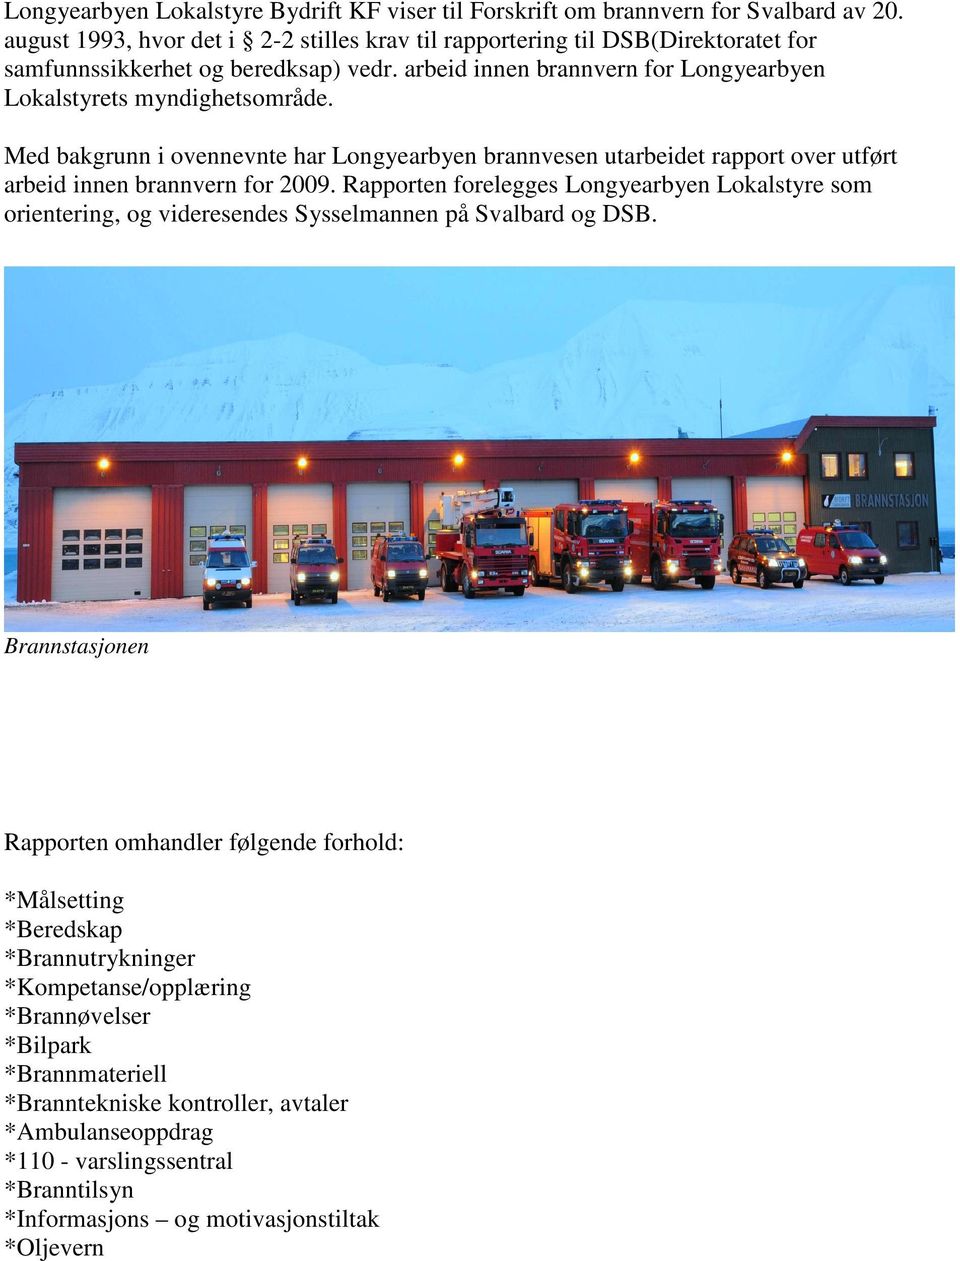 Med bakgrunn i ovennevnte har Longyearbyen brannvesen utarbeidet rapport over utført arbeid innen brannvern for 2009.